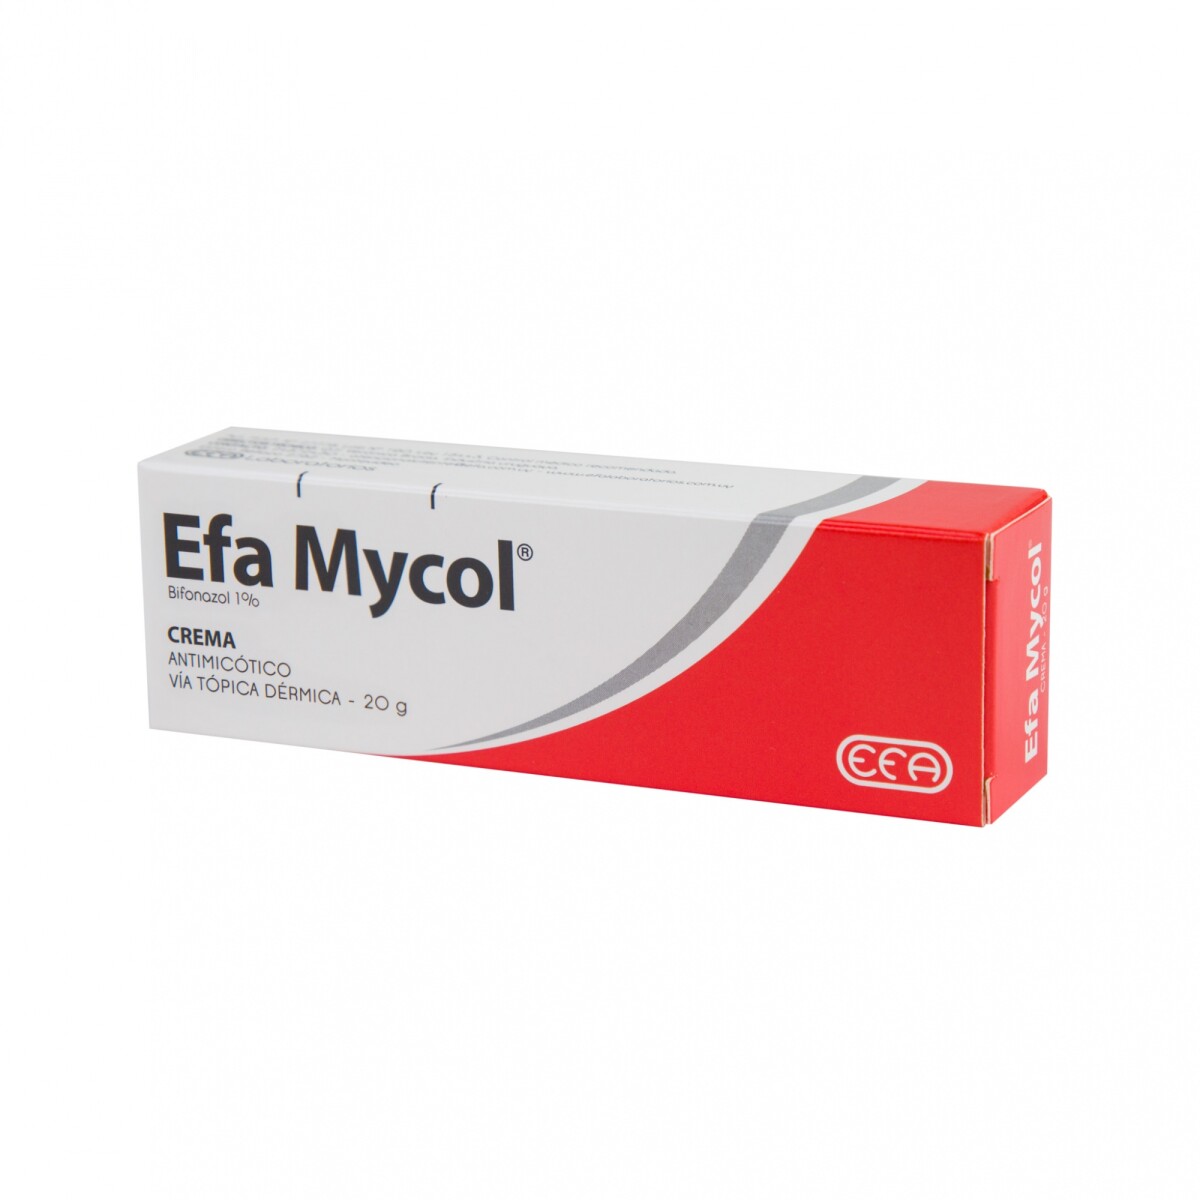 Efa Mycol Crema 